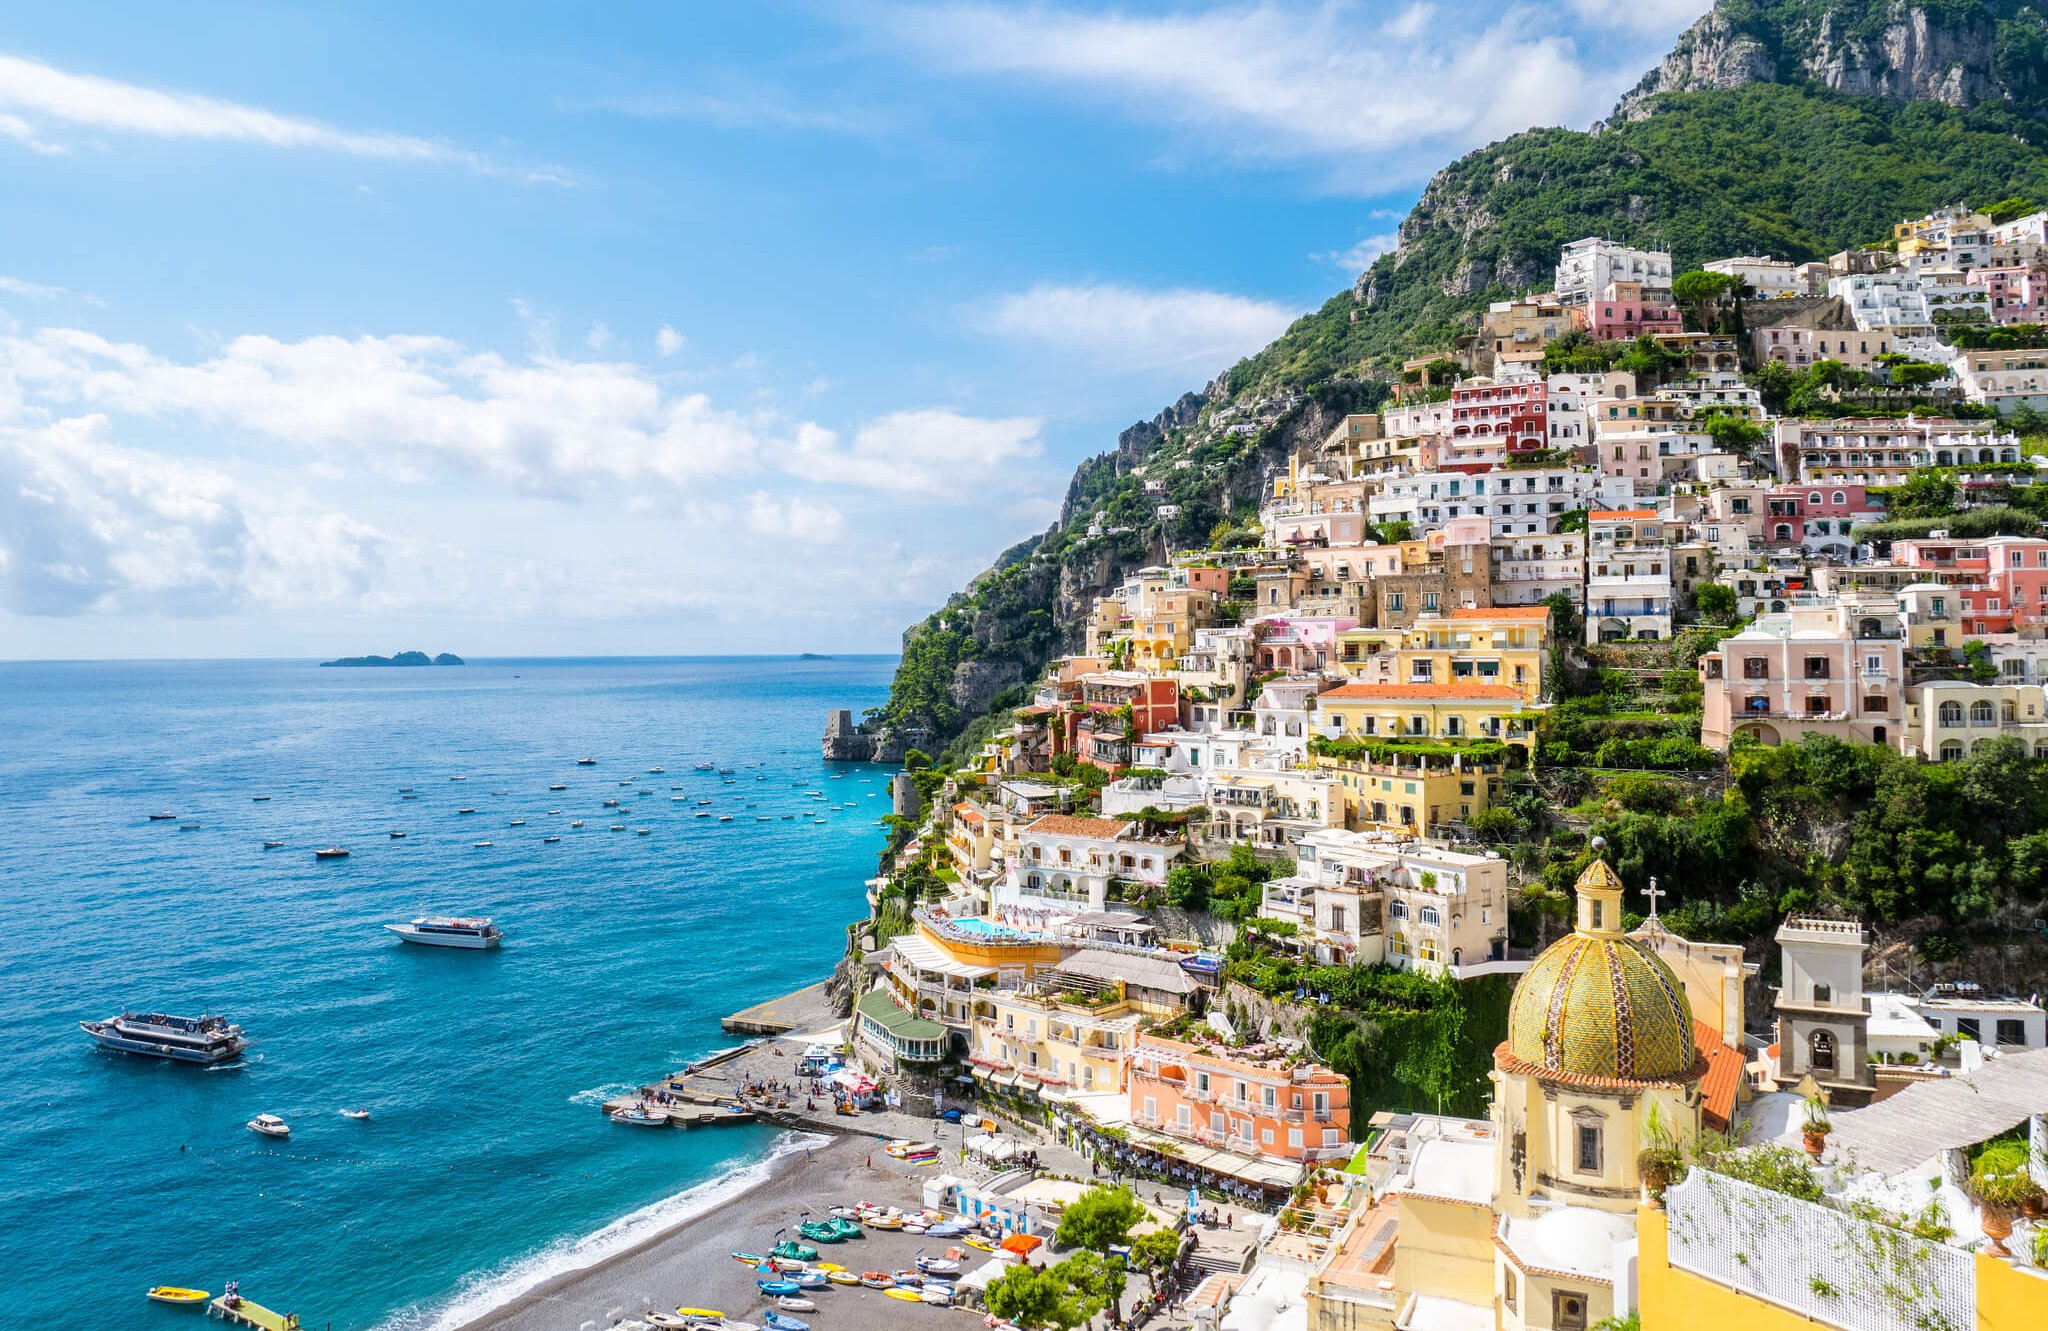 Doğal Güzelliğin En Üst Noktası “Amalfi”